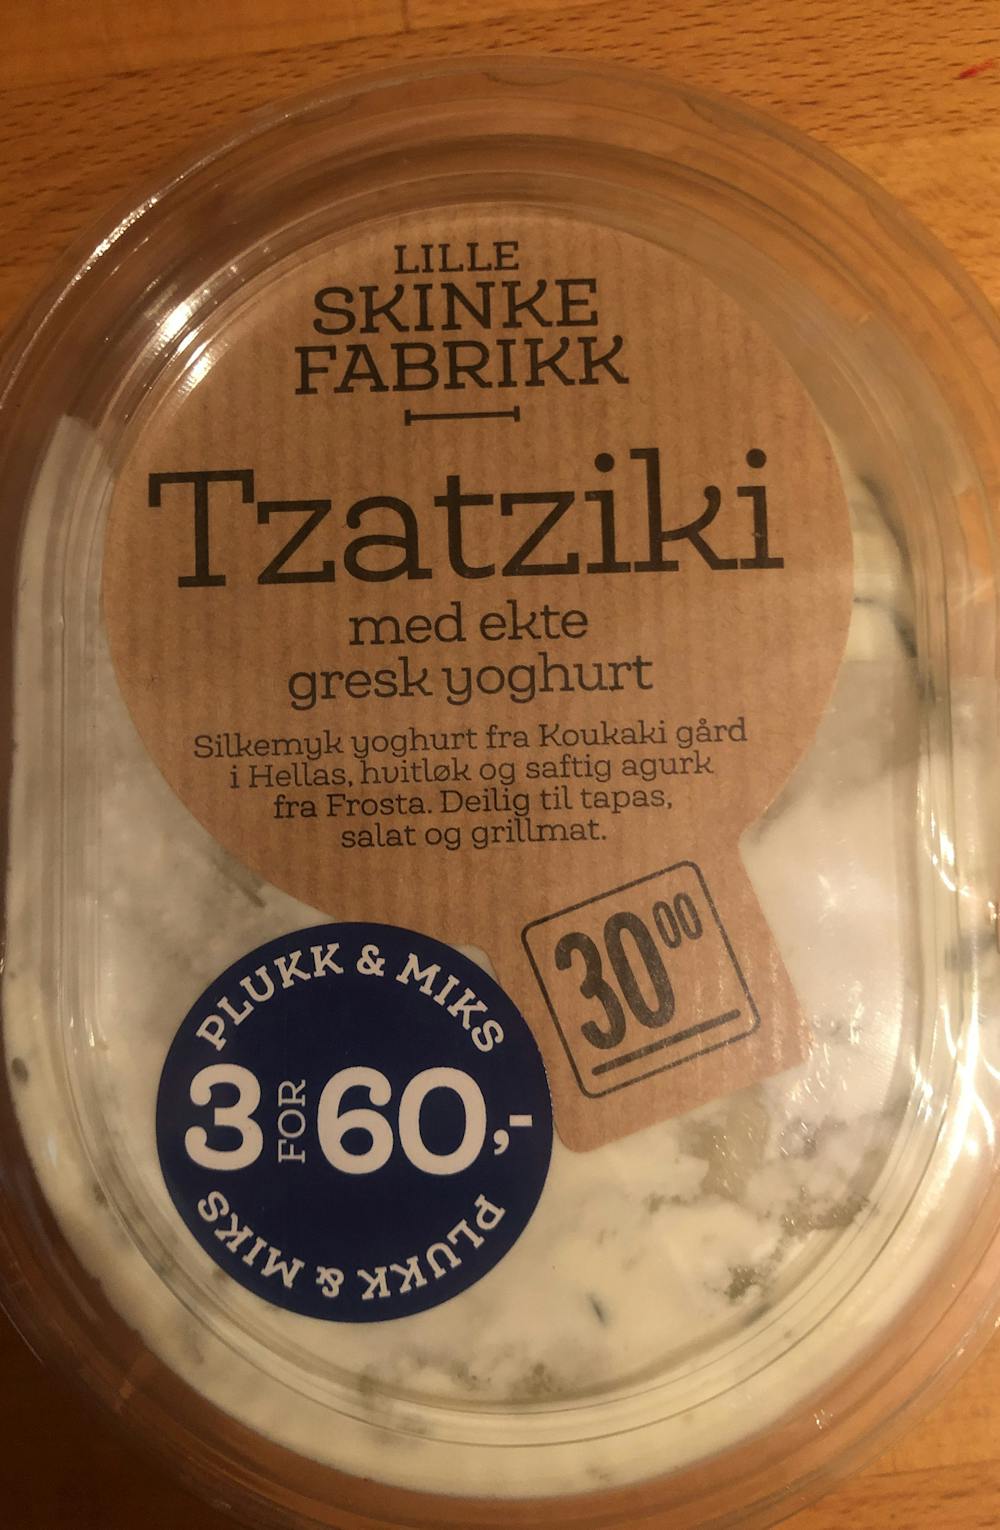 Tzatziki med ekte gresk yoghurt, Lille skinke fabrikk